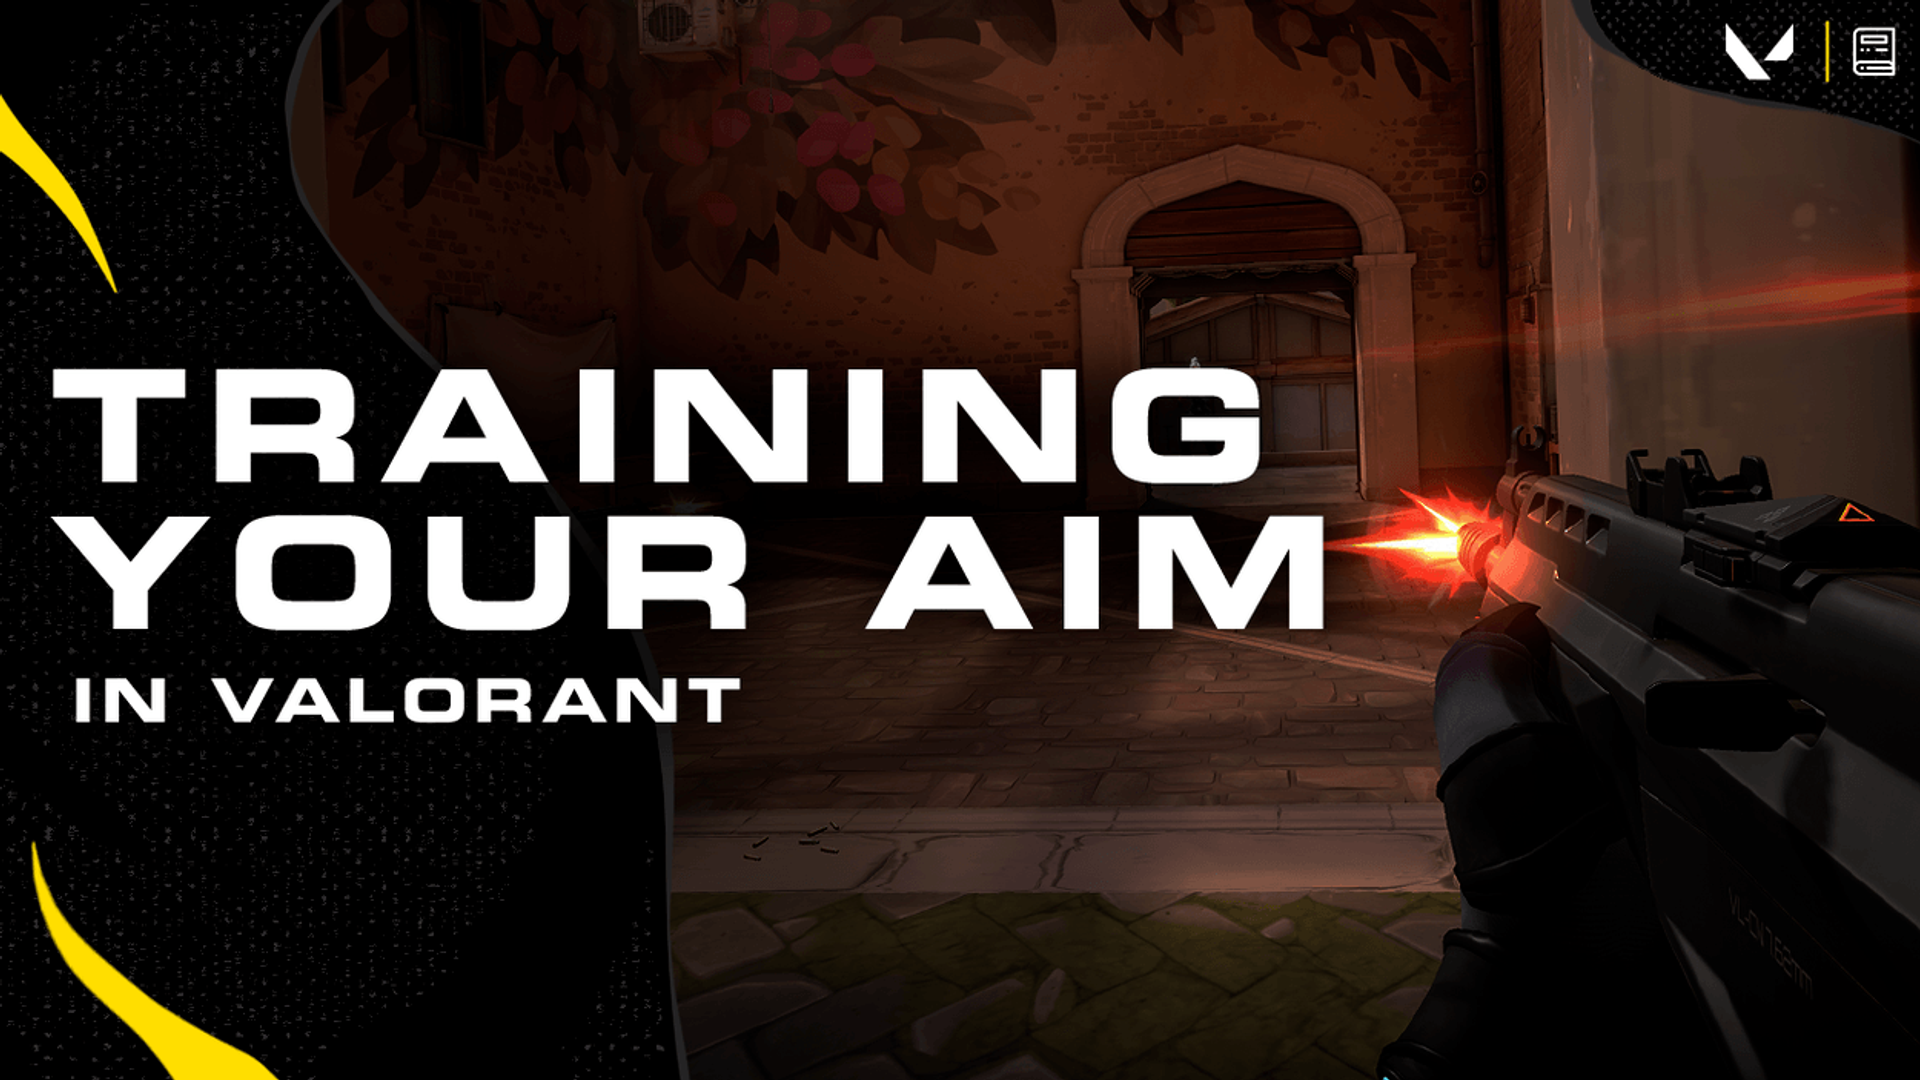 How to improve aim in Valorant